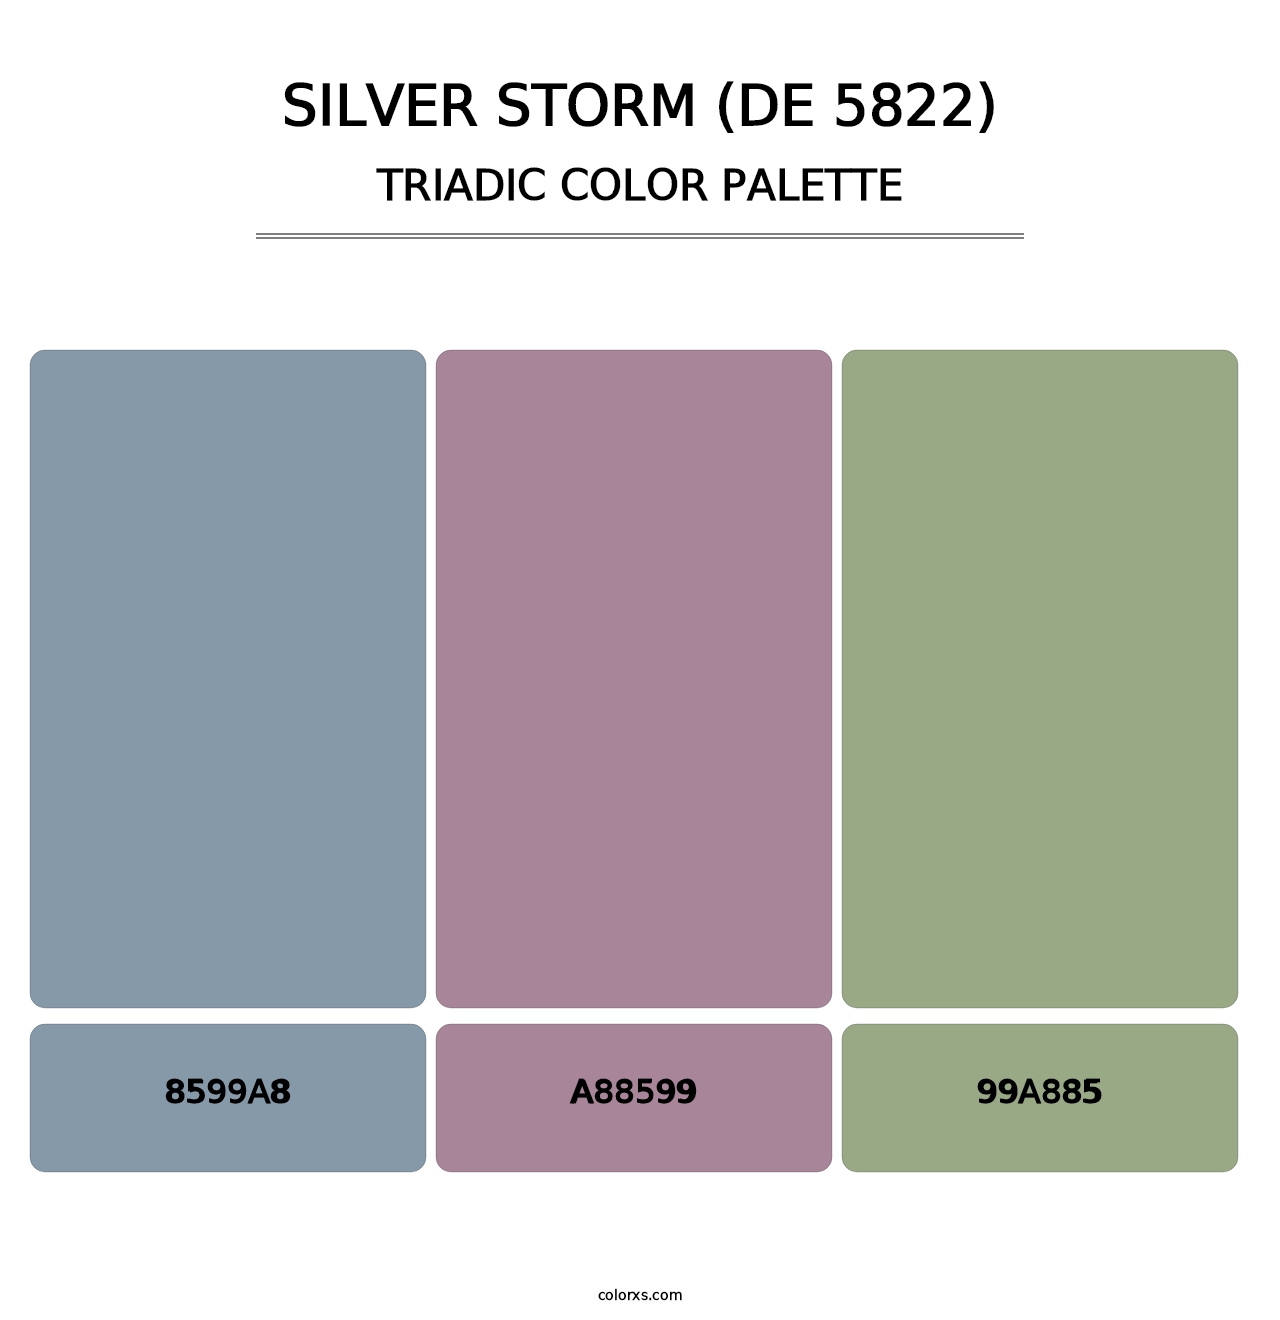 Silver Storm (DE 5822) - Triadic Color Palette